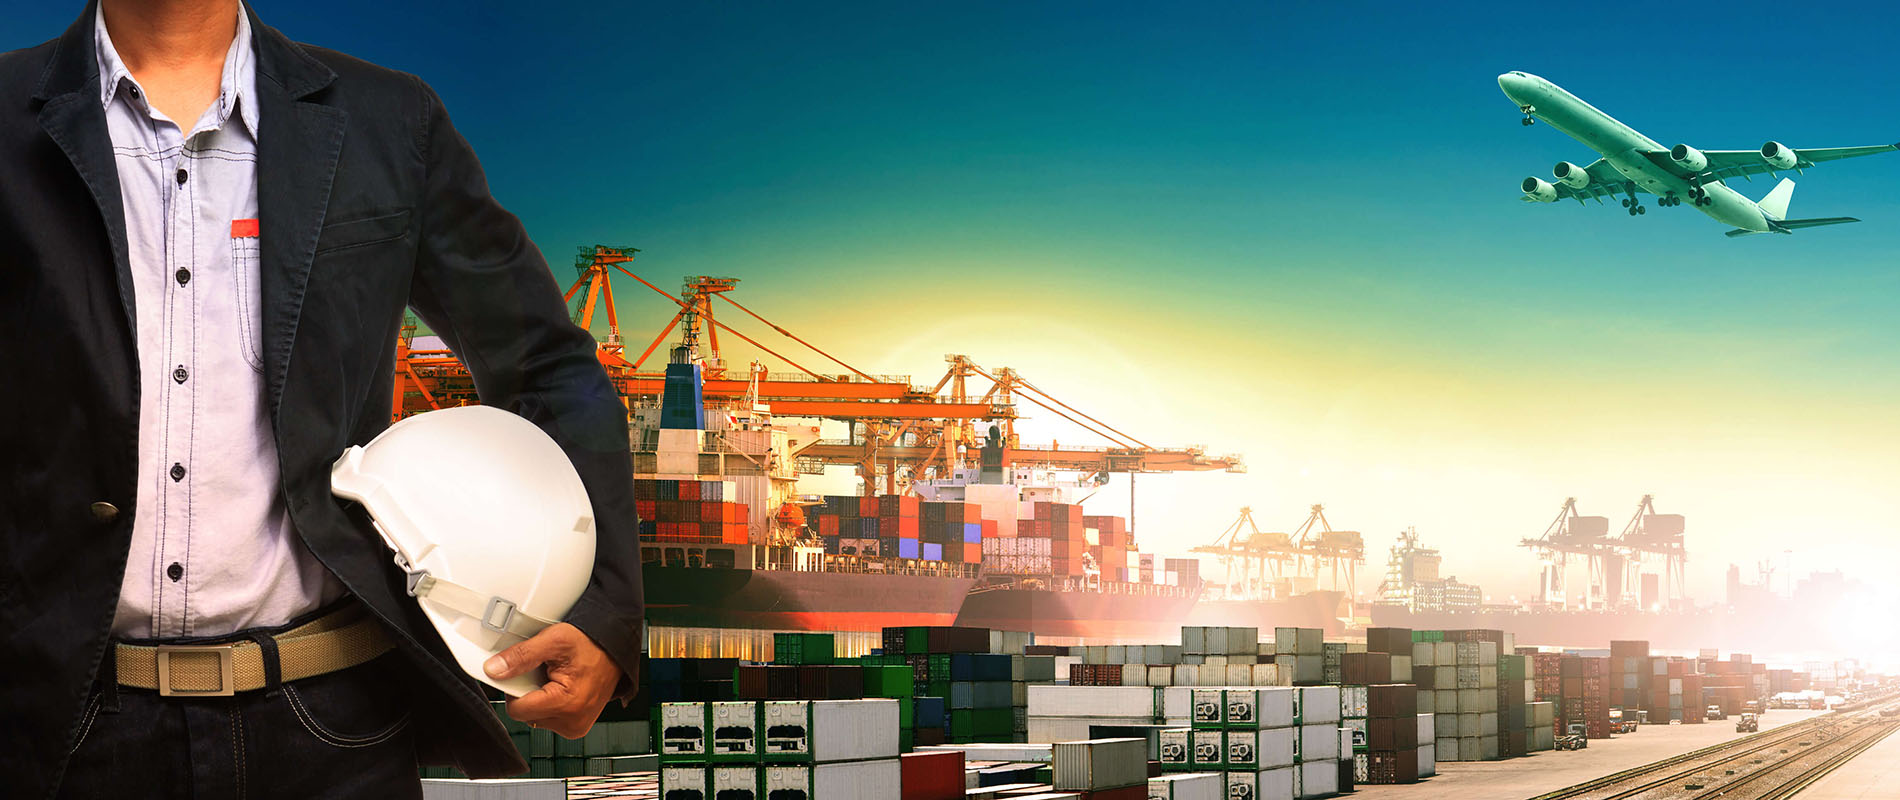 Ngành Logistics và Quản lý chuỗi cung ứng